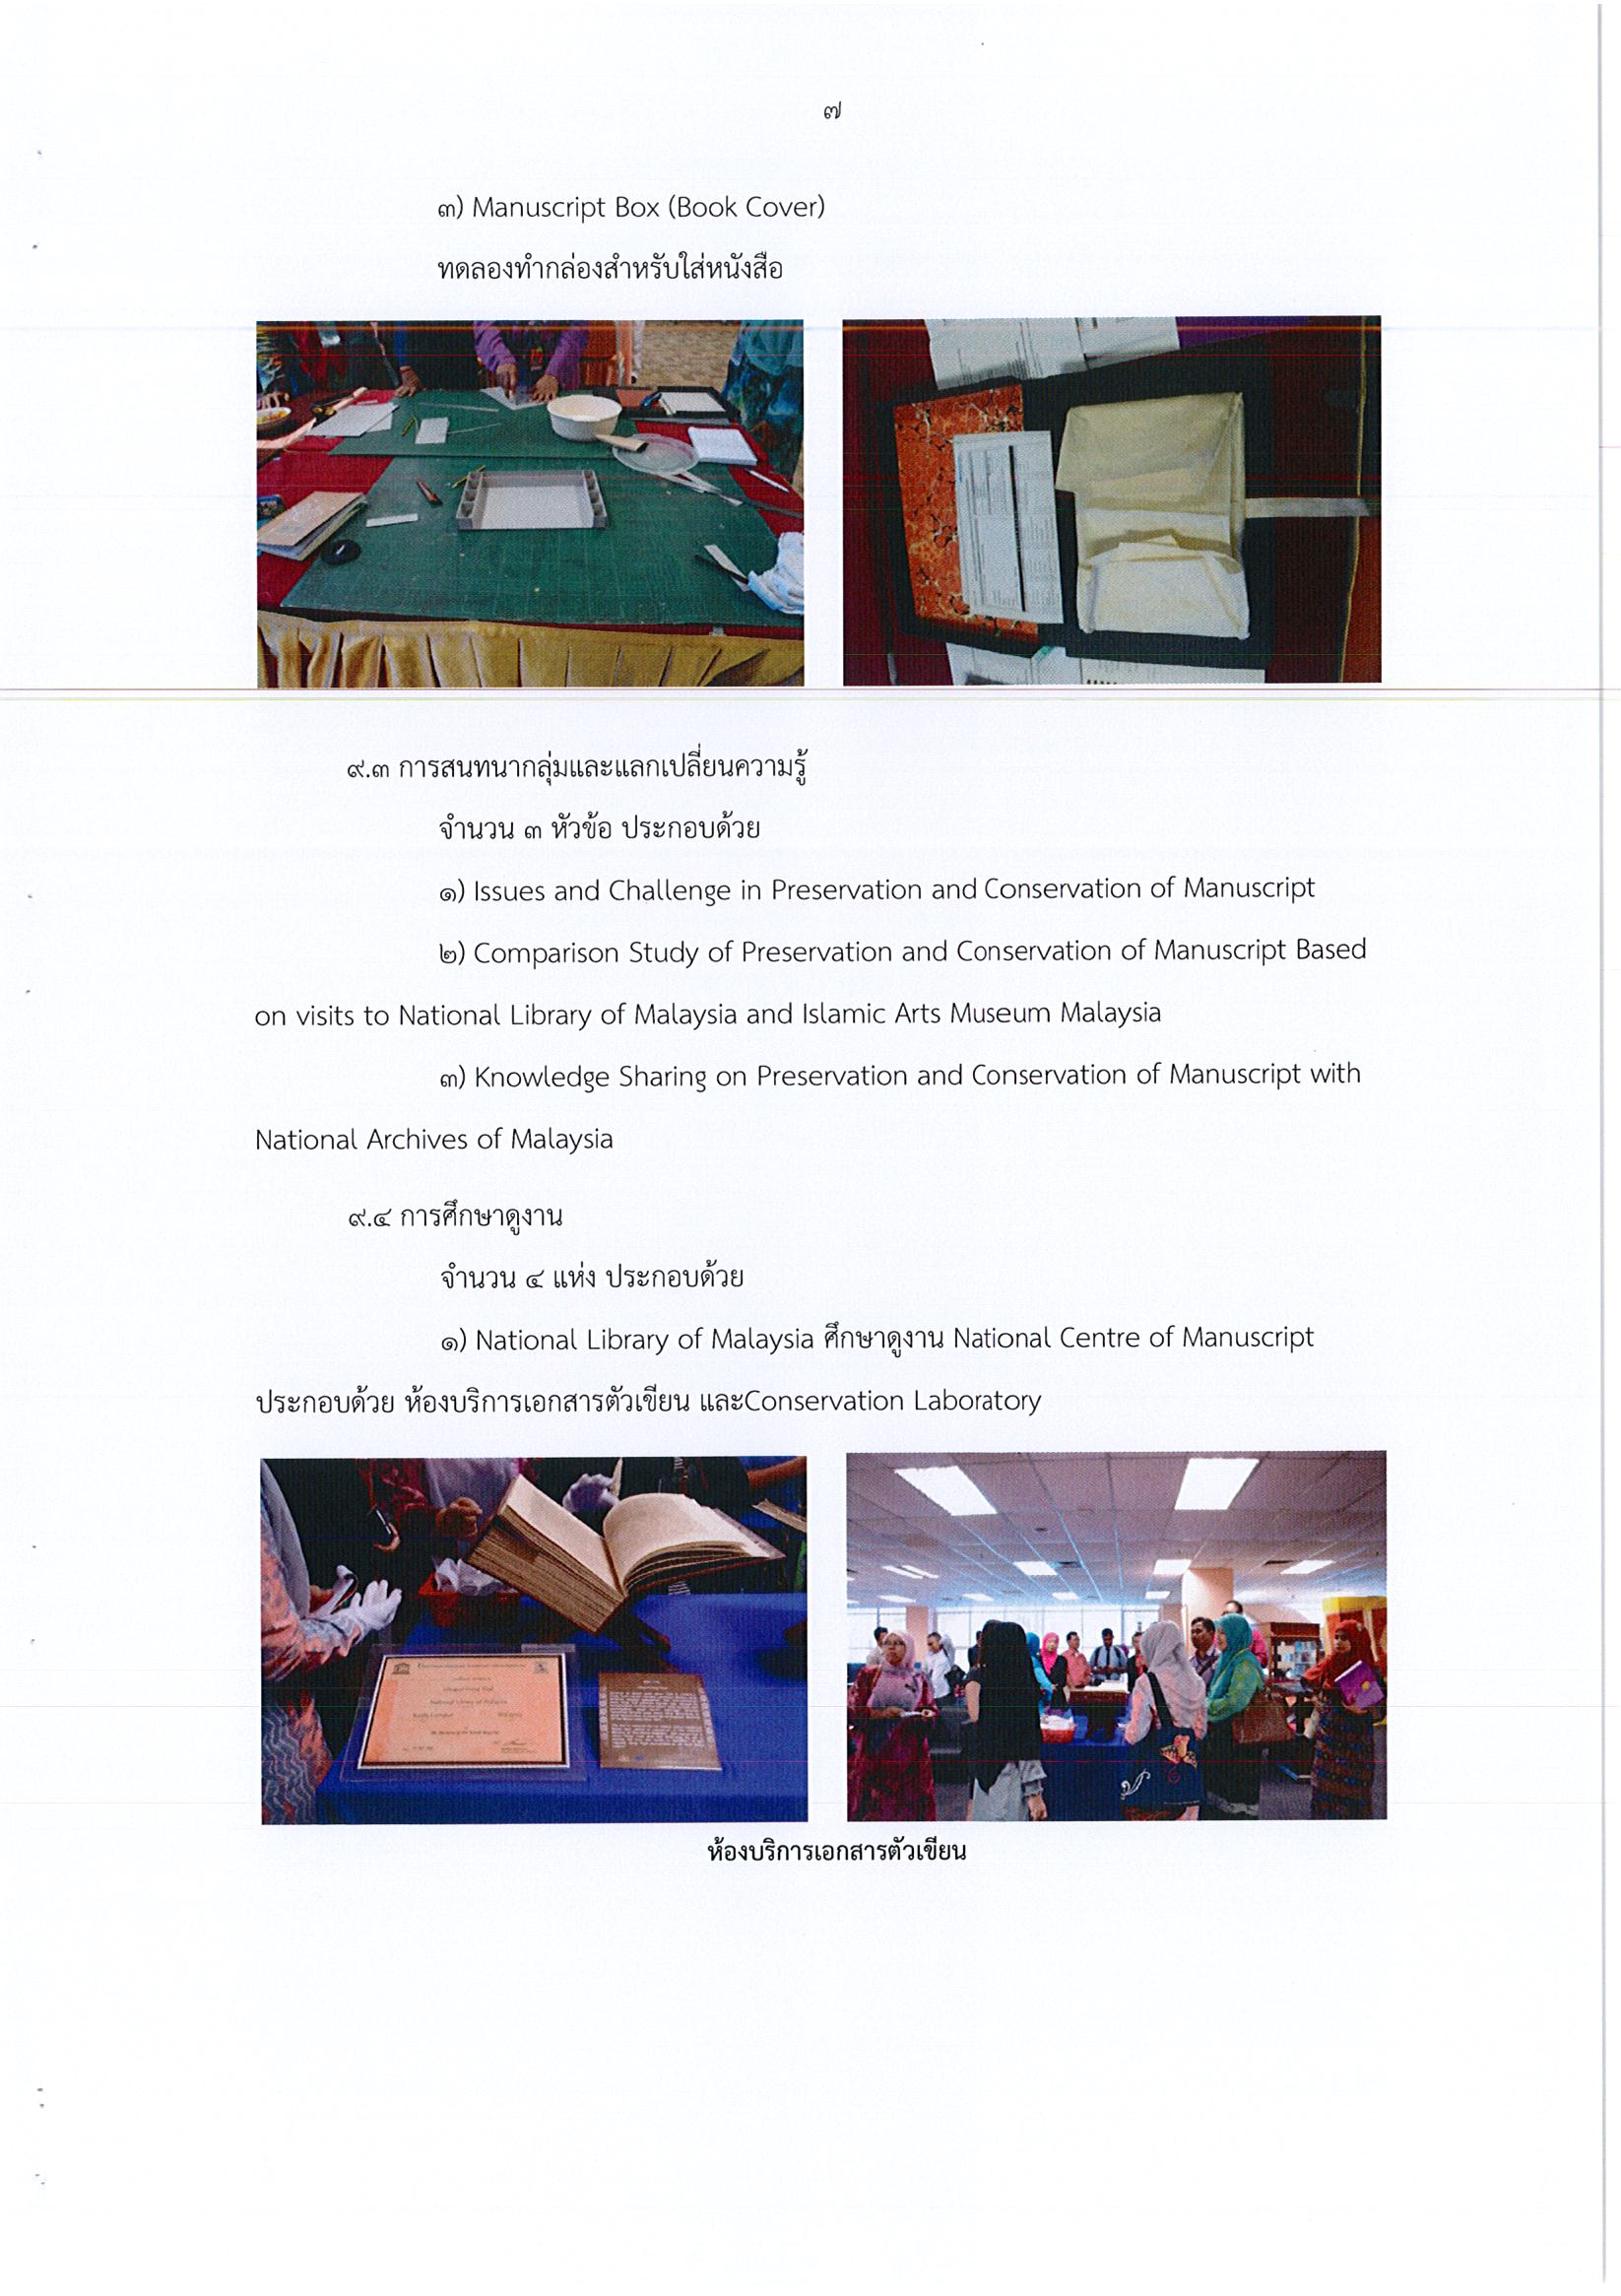 รายงานการเดินทางไปราชการ ณ สหพันธรัฐมาเลเซีย ระหว่างวันที่ 9 – 20 พฤษภาคม 2559 โครงการฝึกอบรมเชิงปฏิบัติการด้านการอนุรักษ์เอกสารตัวเขียน